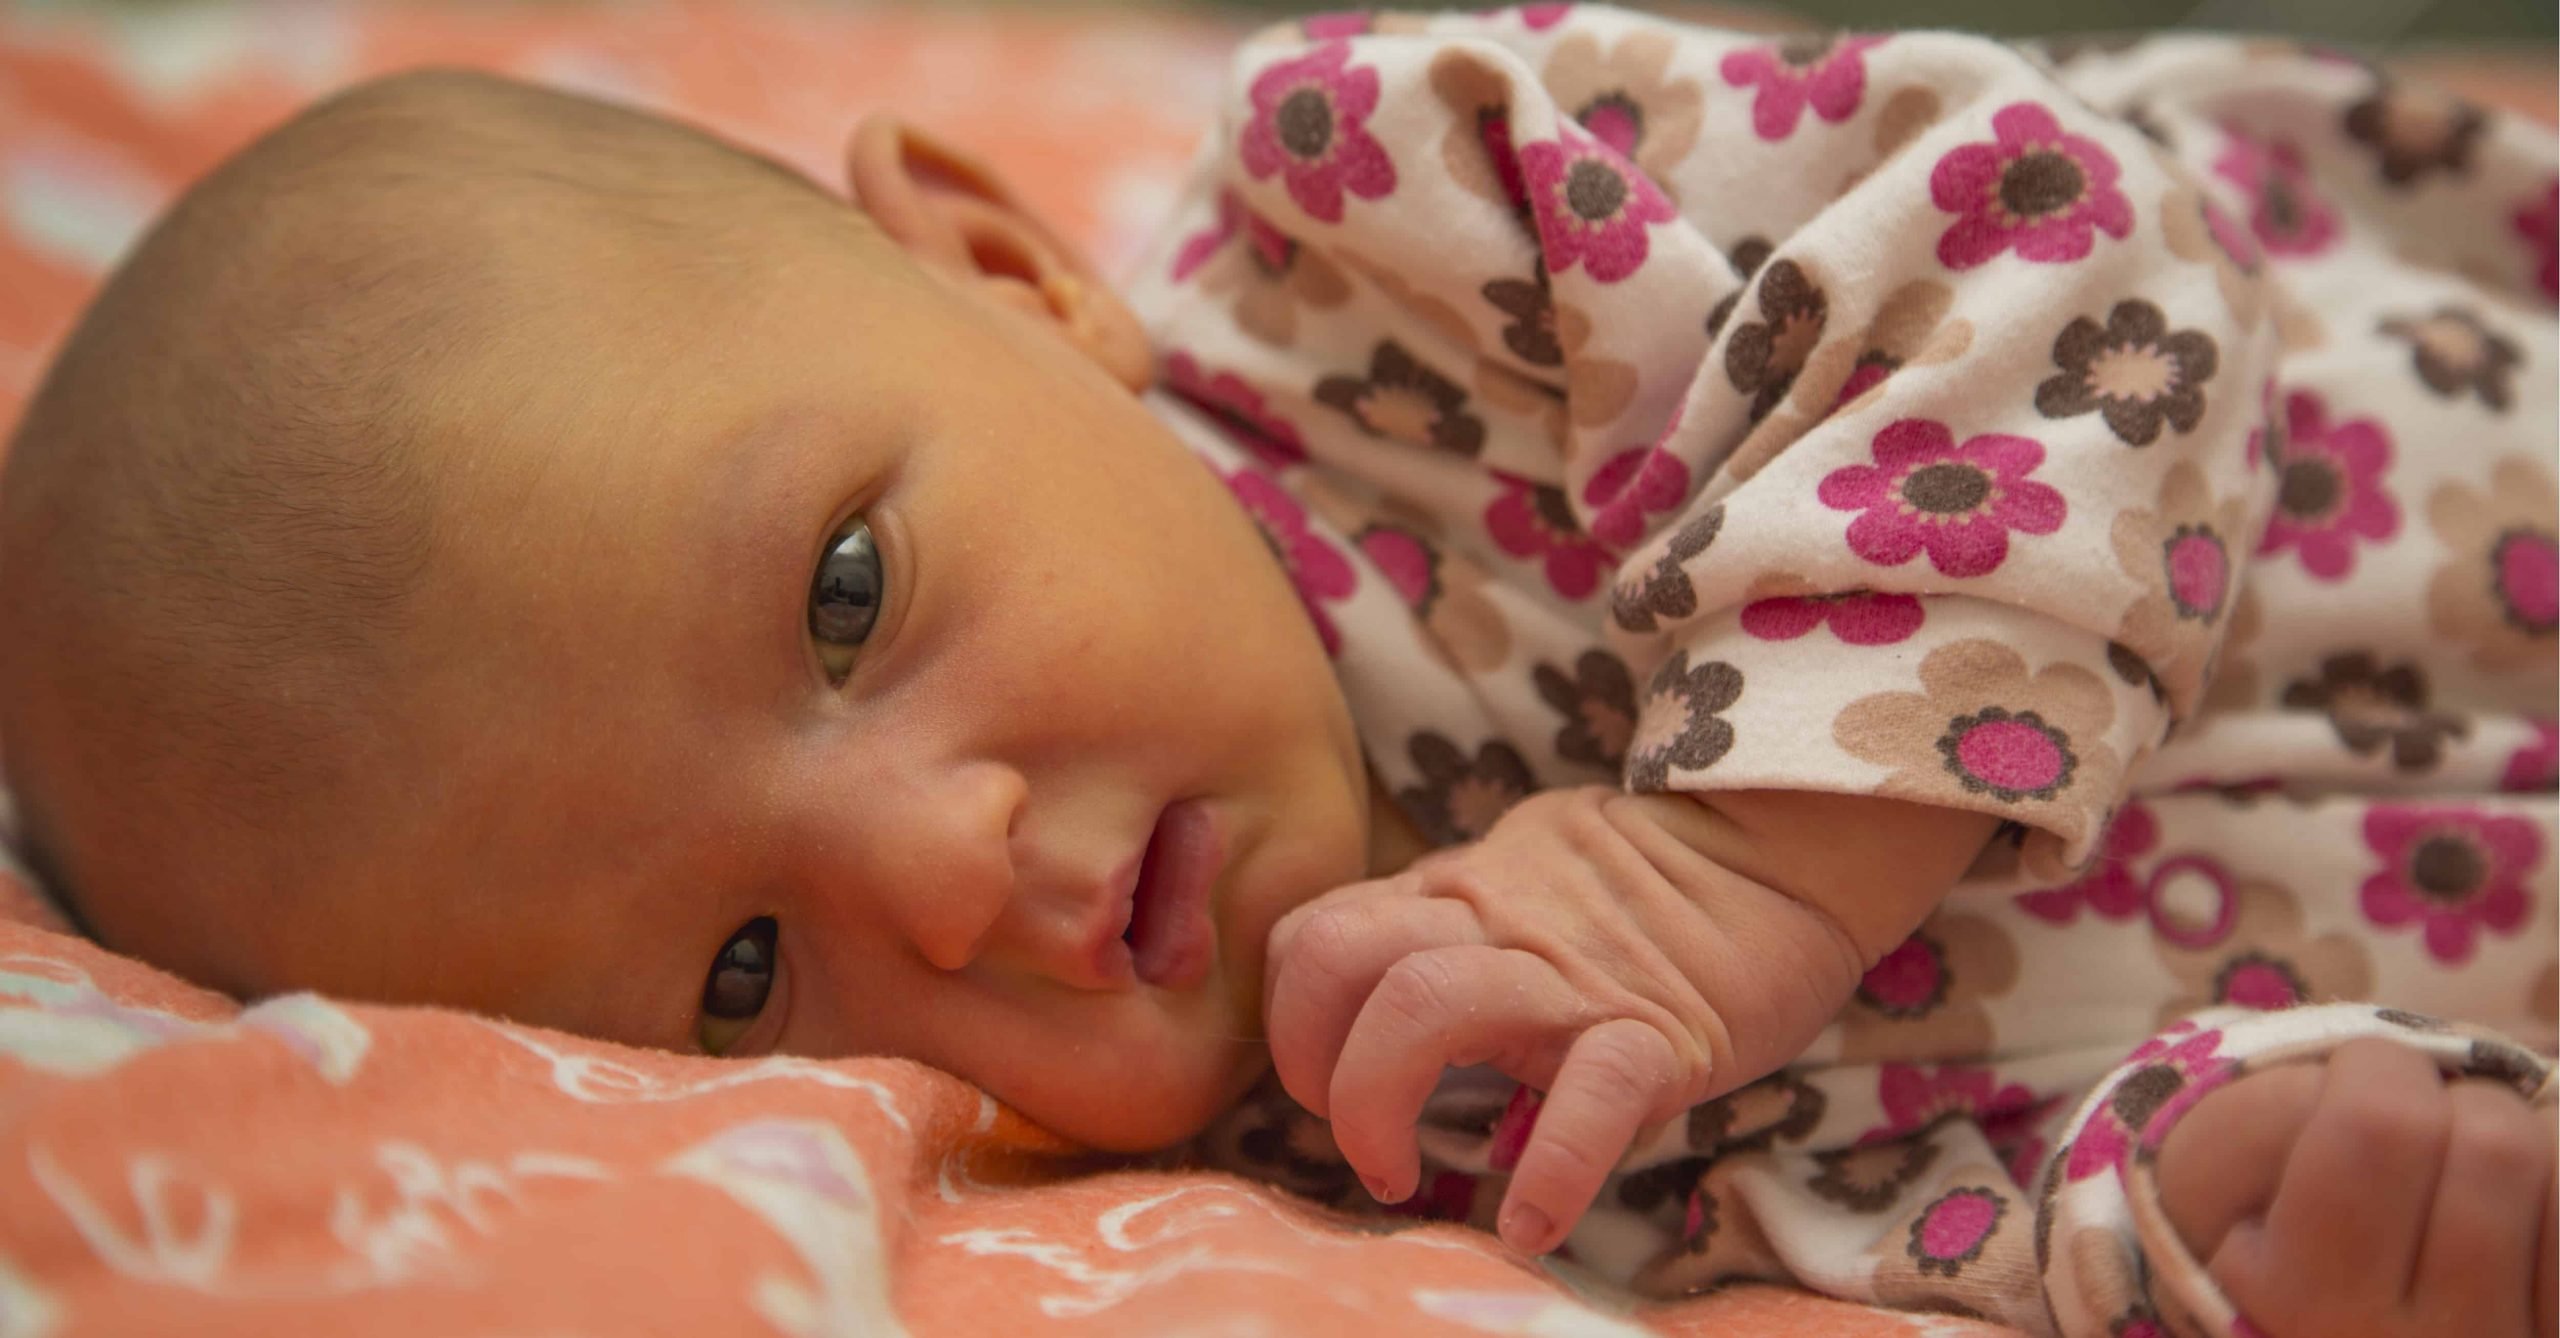 Jaundice In Newborns